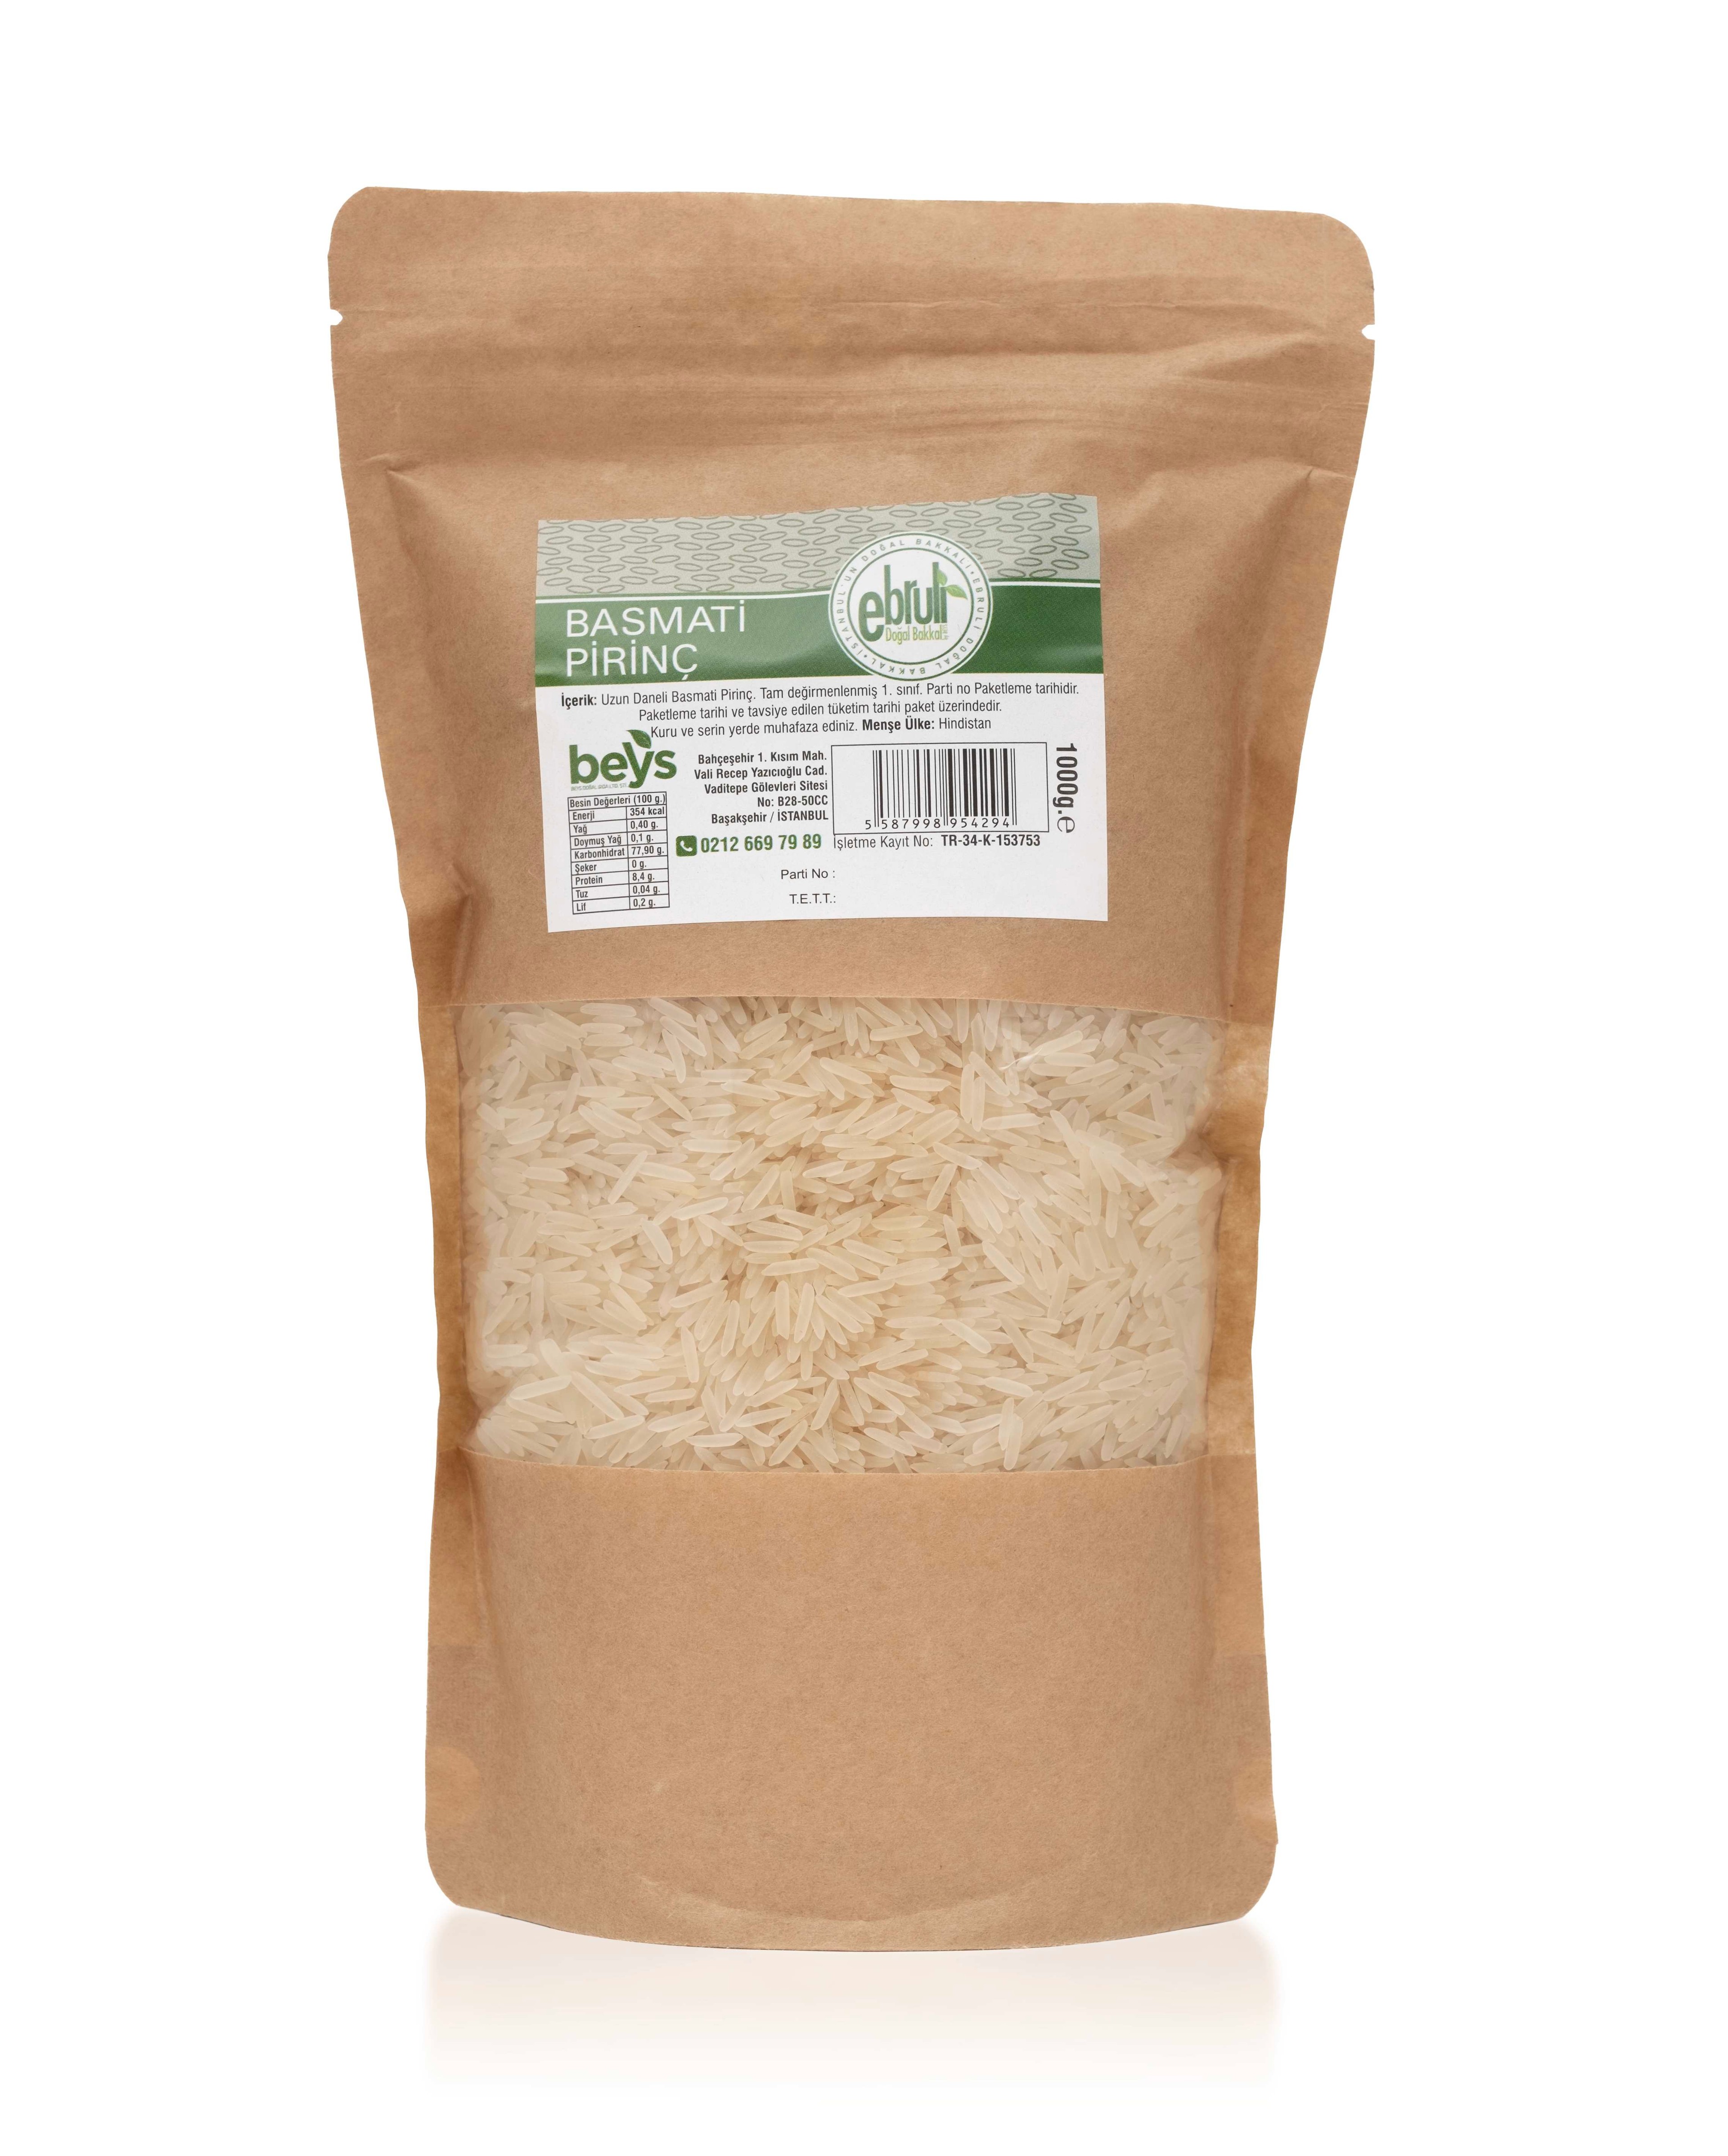 Basmati Pirinç 1 kg (Uzun Daneli)